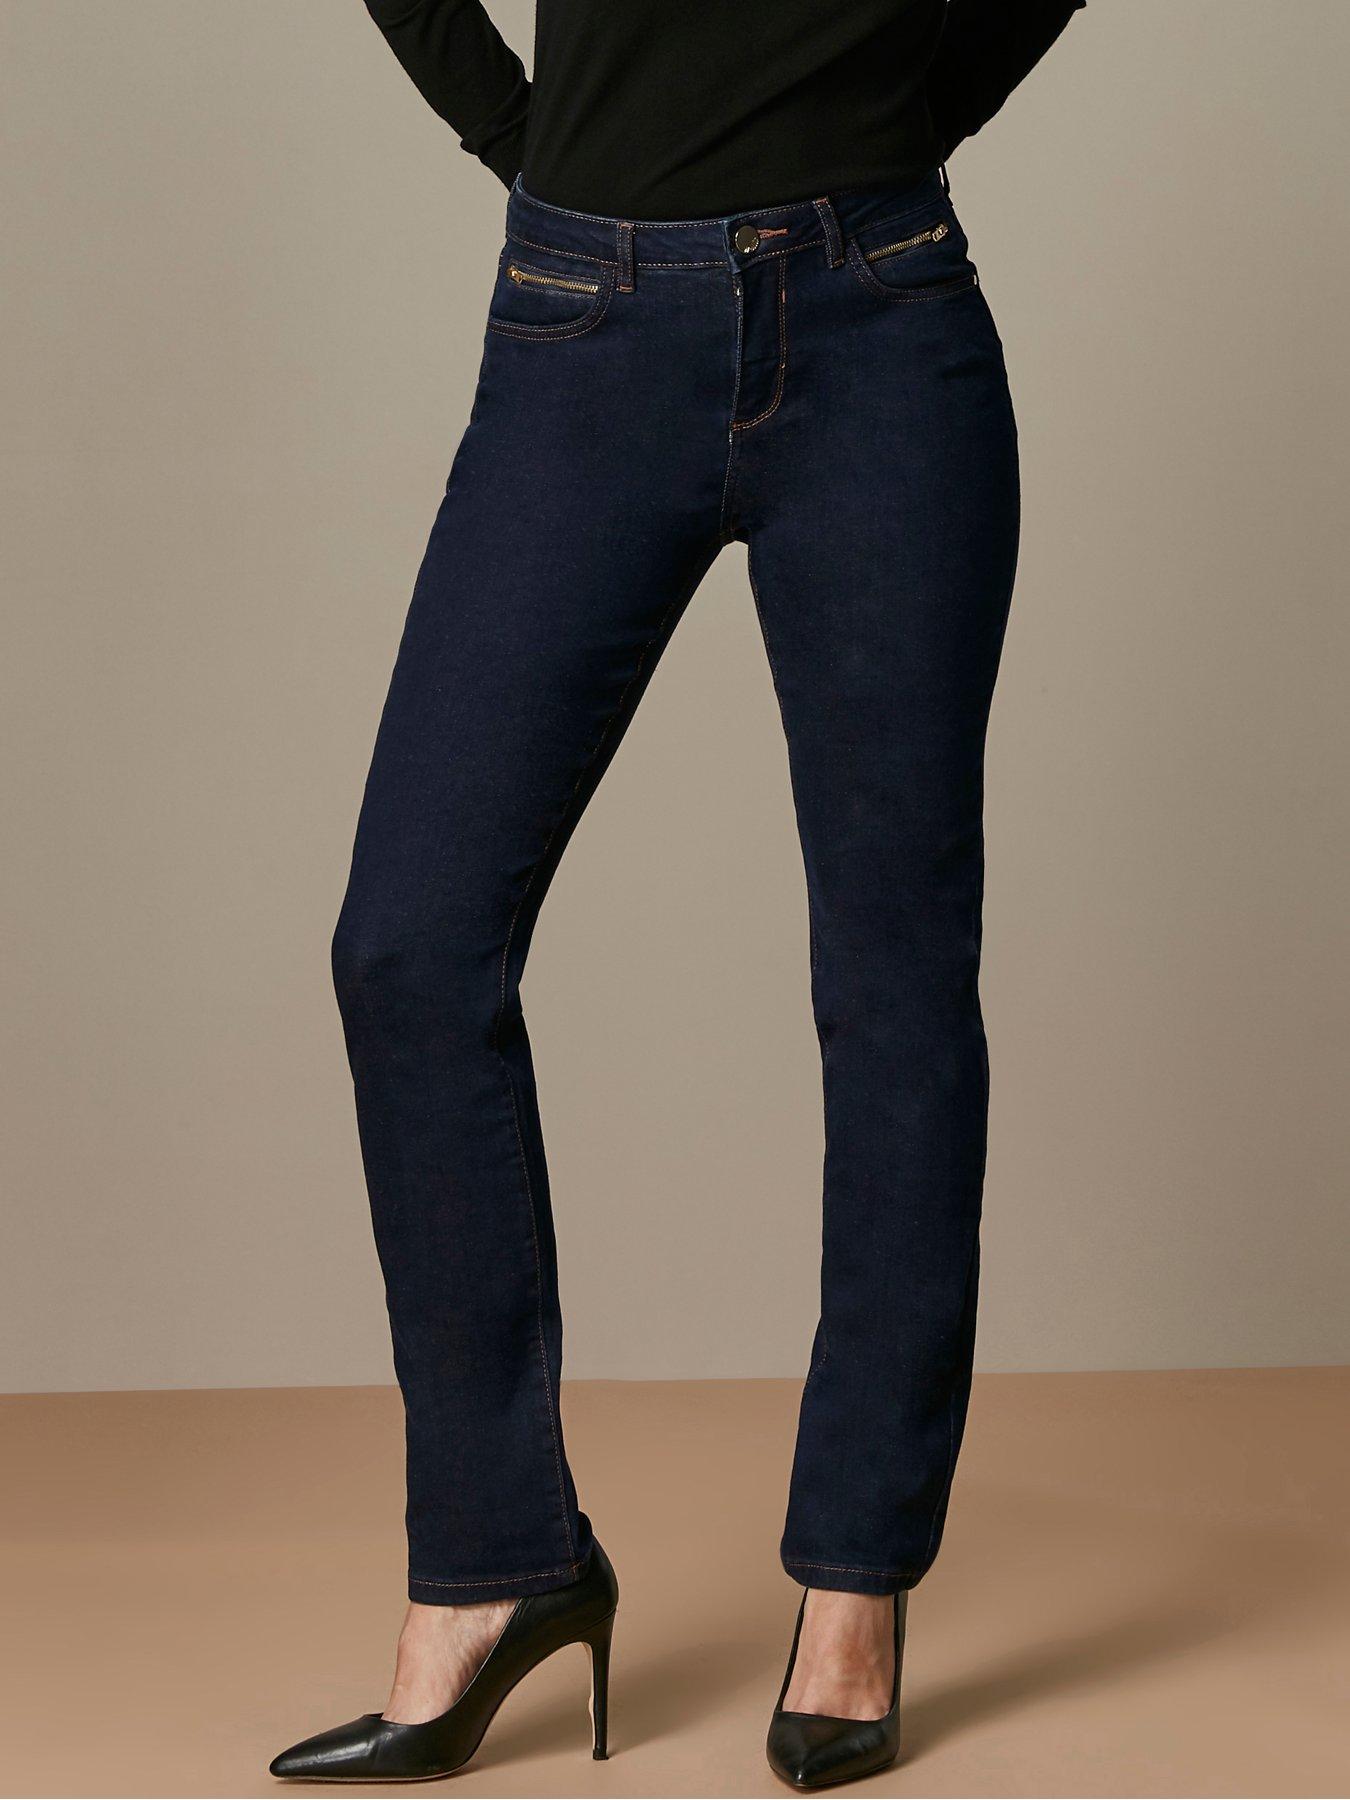 wallis ladies jeans